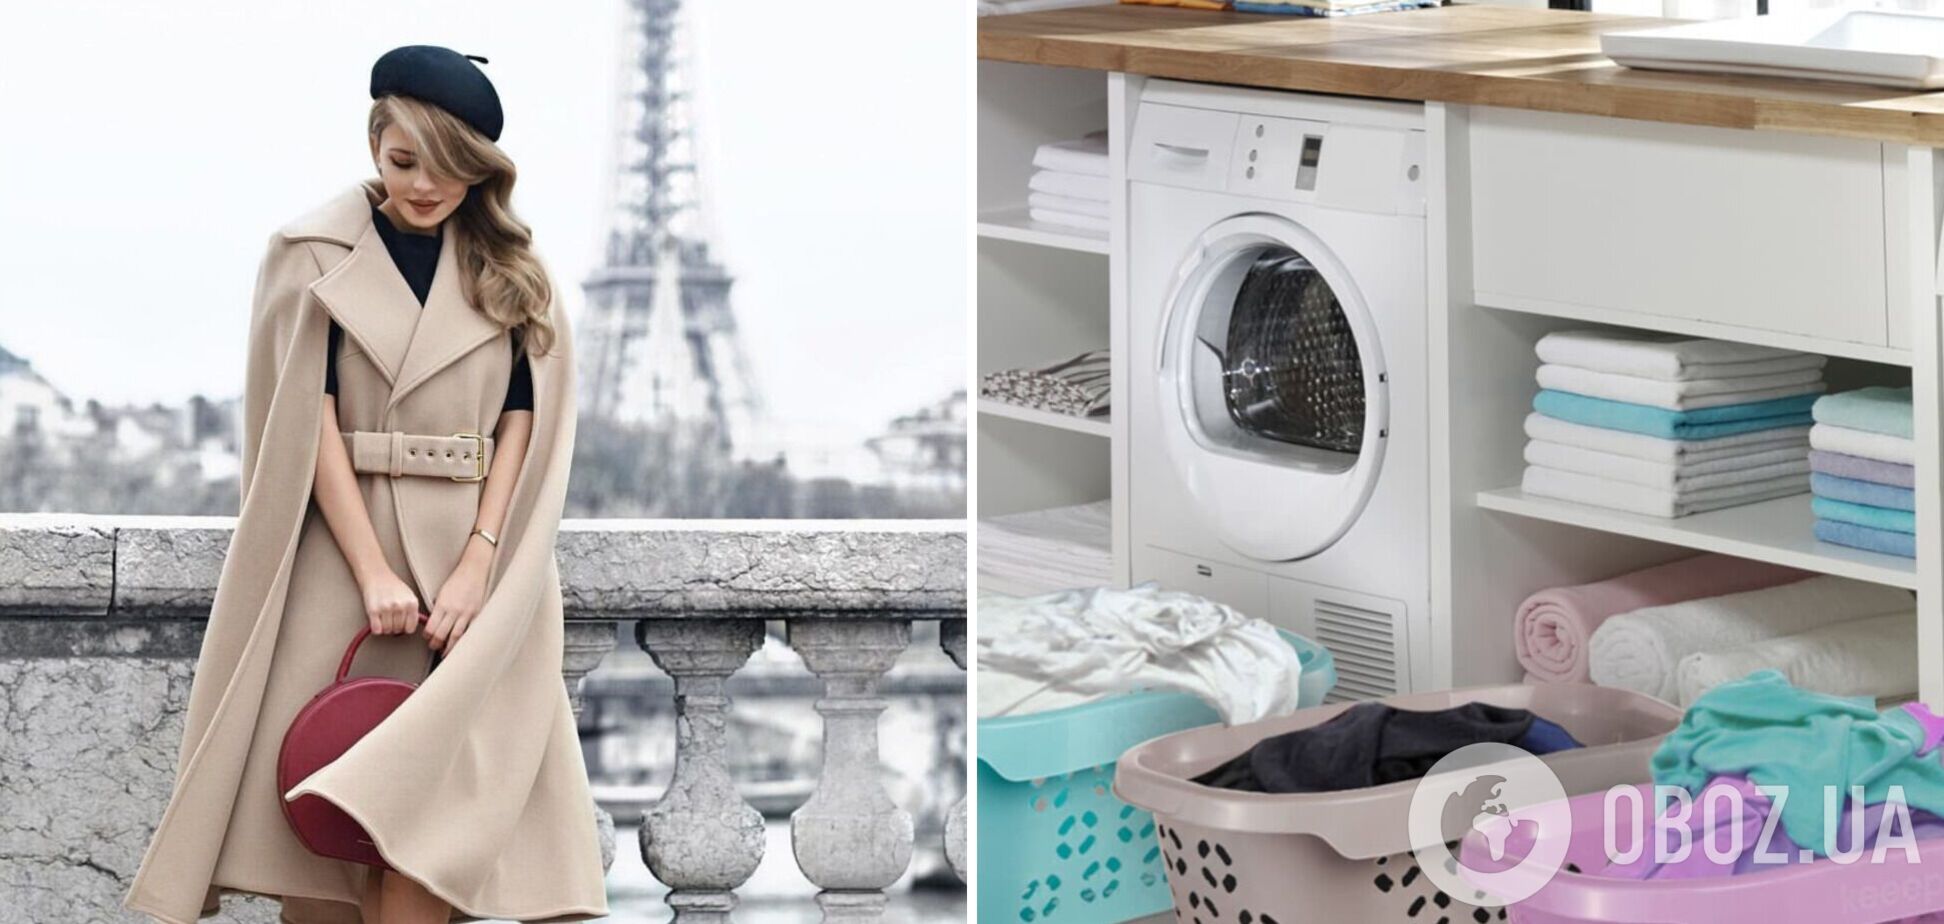 Як повернути речам ідеальну чистоту: французький спосіб прання